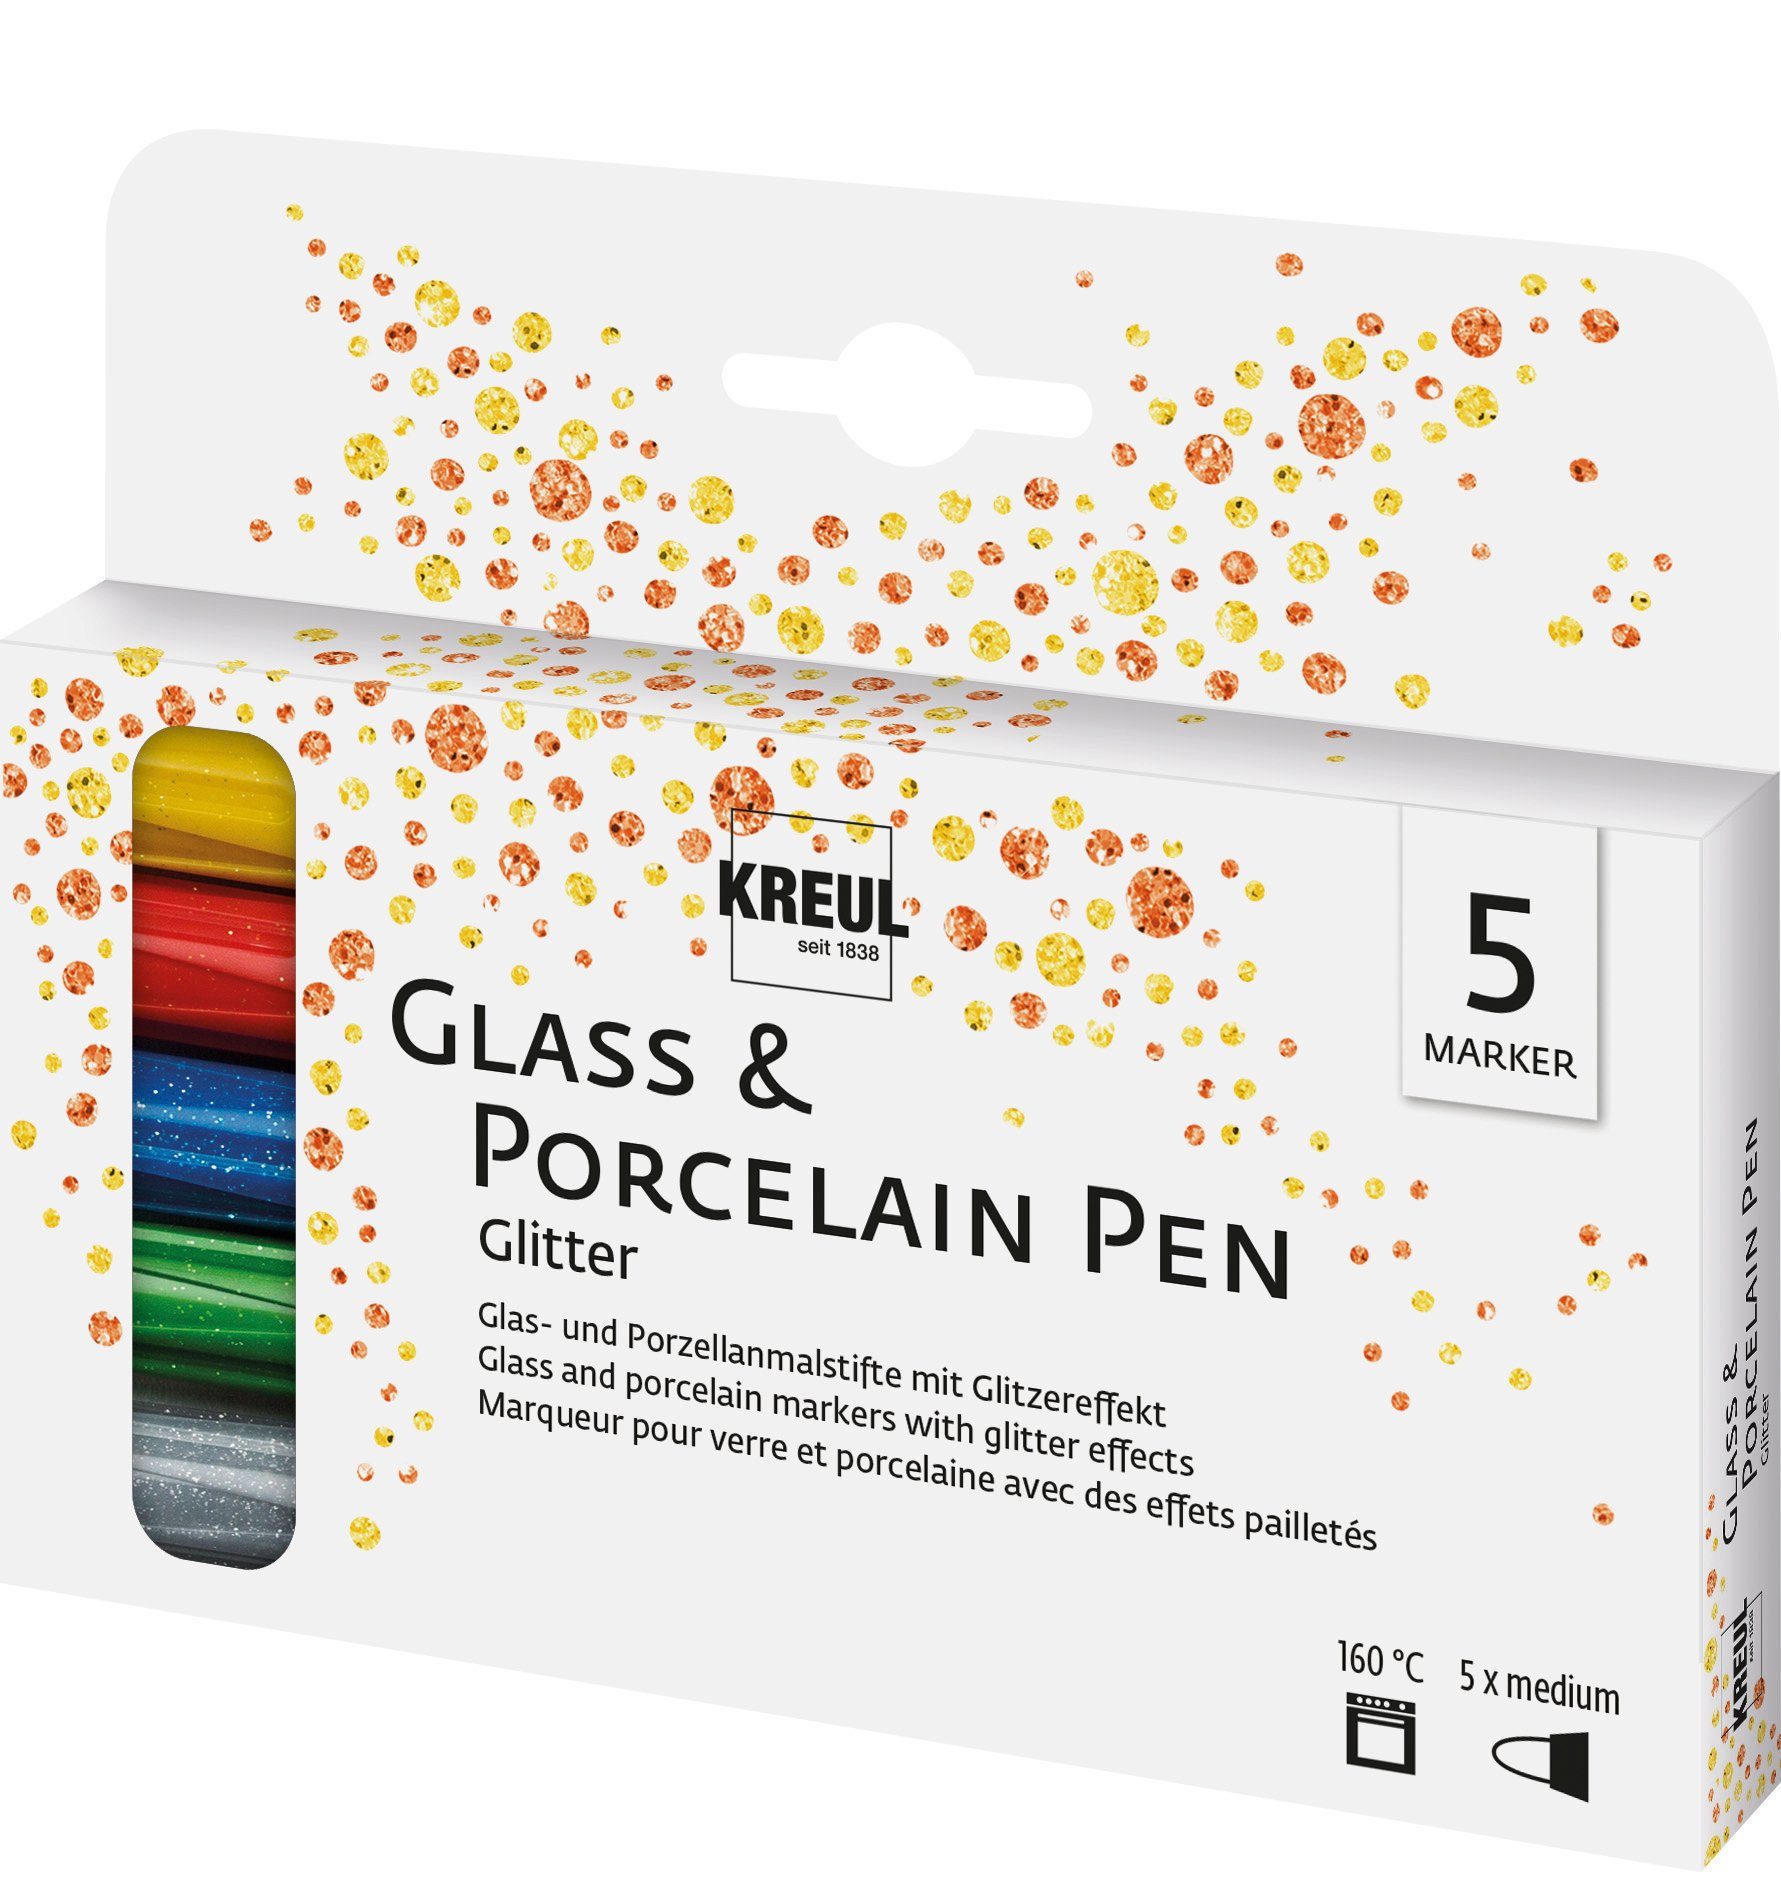 Kreul Lackmarker Porzellan- & Glasmalstift Glass & Porcelain Pen -, 5er-Set